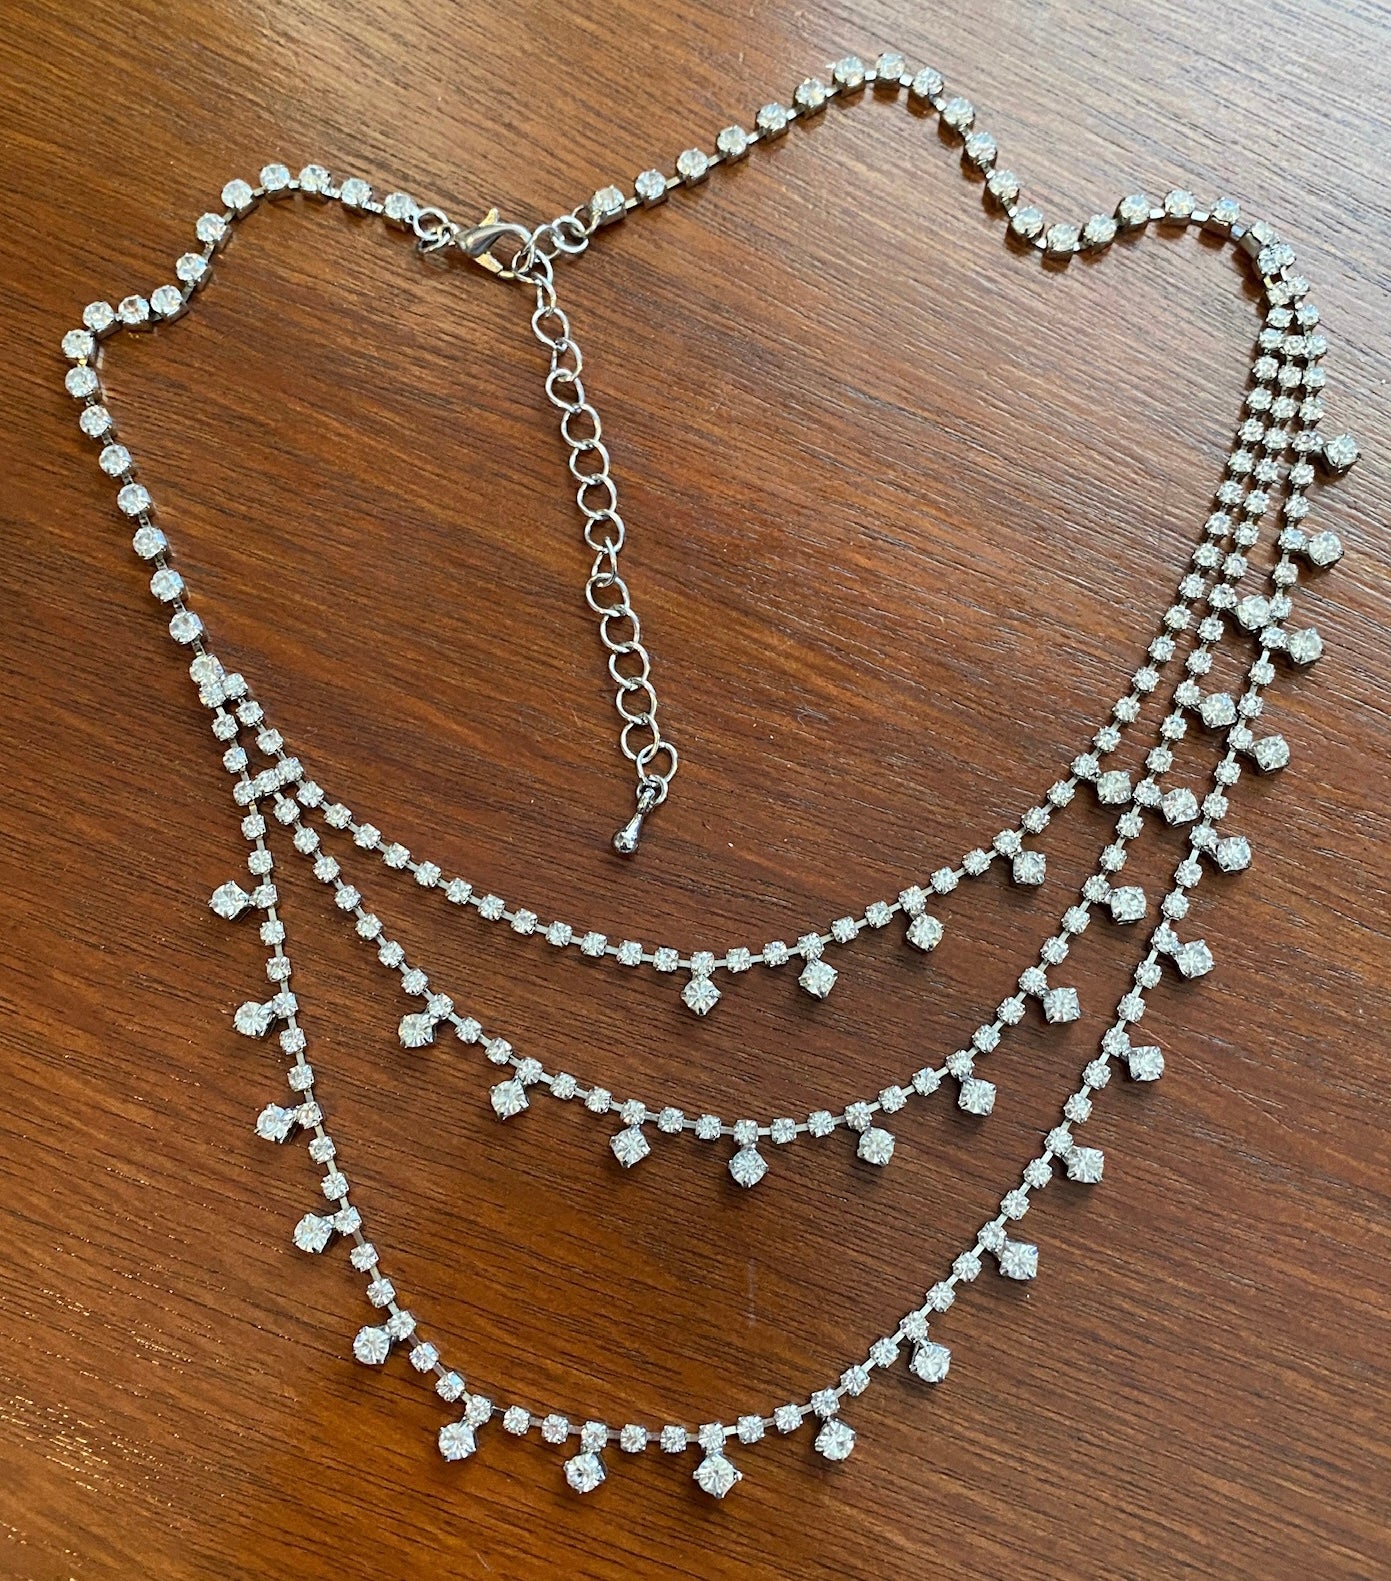 Vintage Style Rhinestone Multistrand Necklace